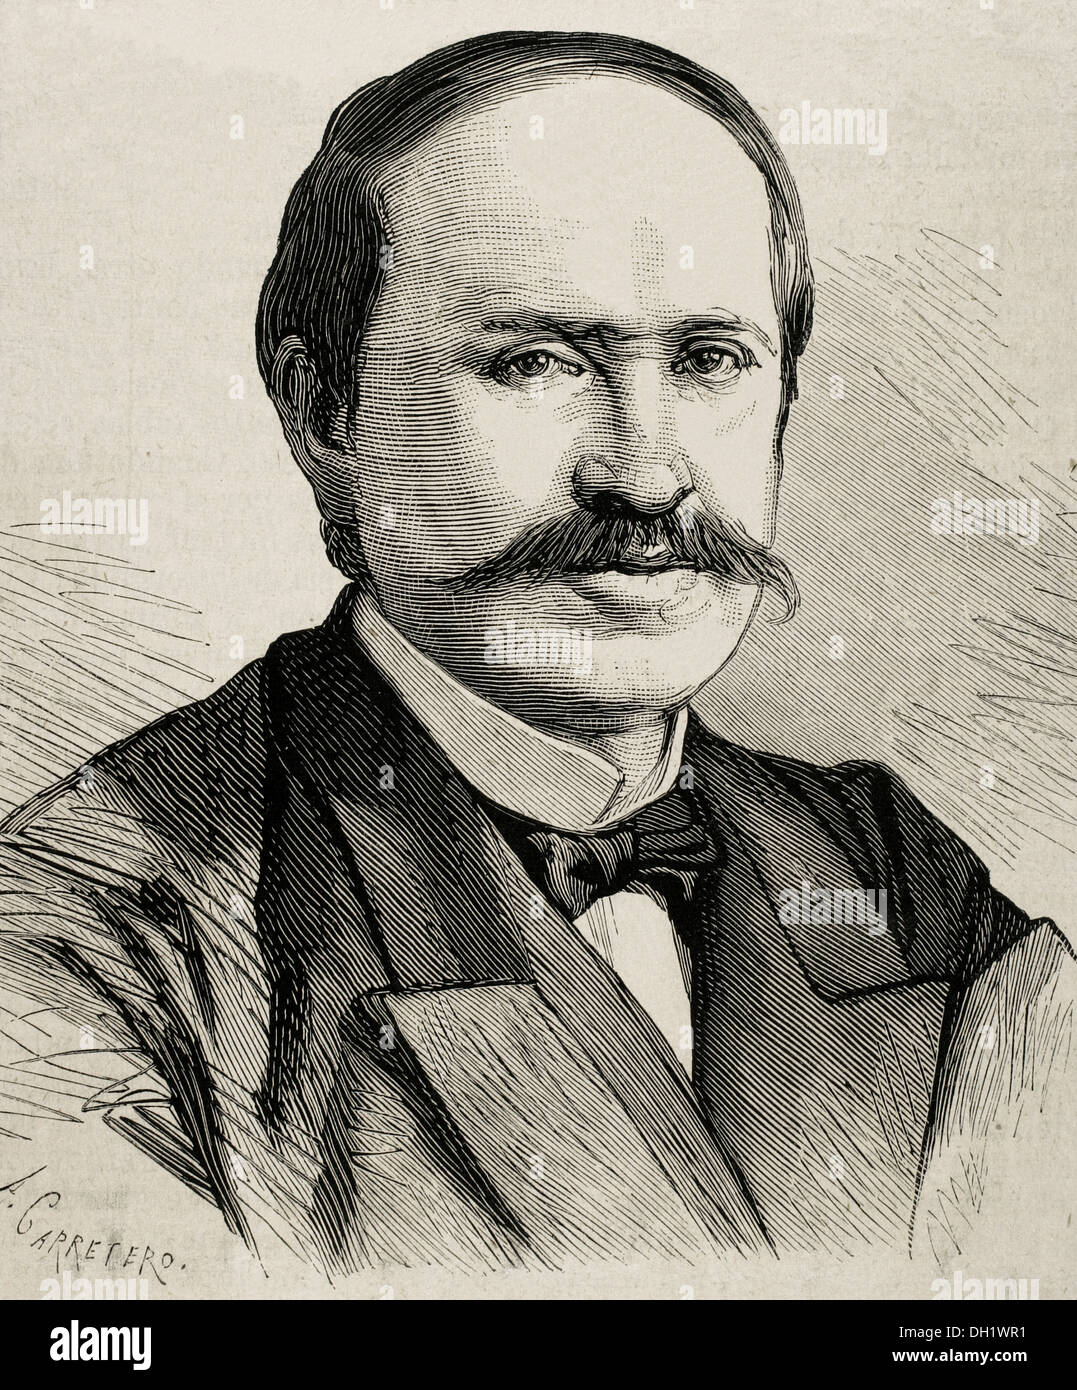 Nikolai Pawlowitsch Ignatjew (1832-1908). Russischer Staatsmann und Diplomat. Gravur. Stockfoto